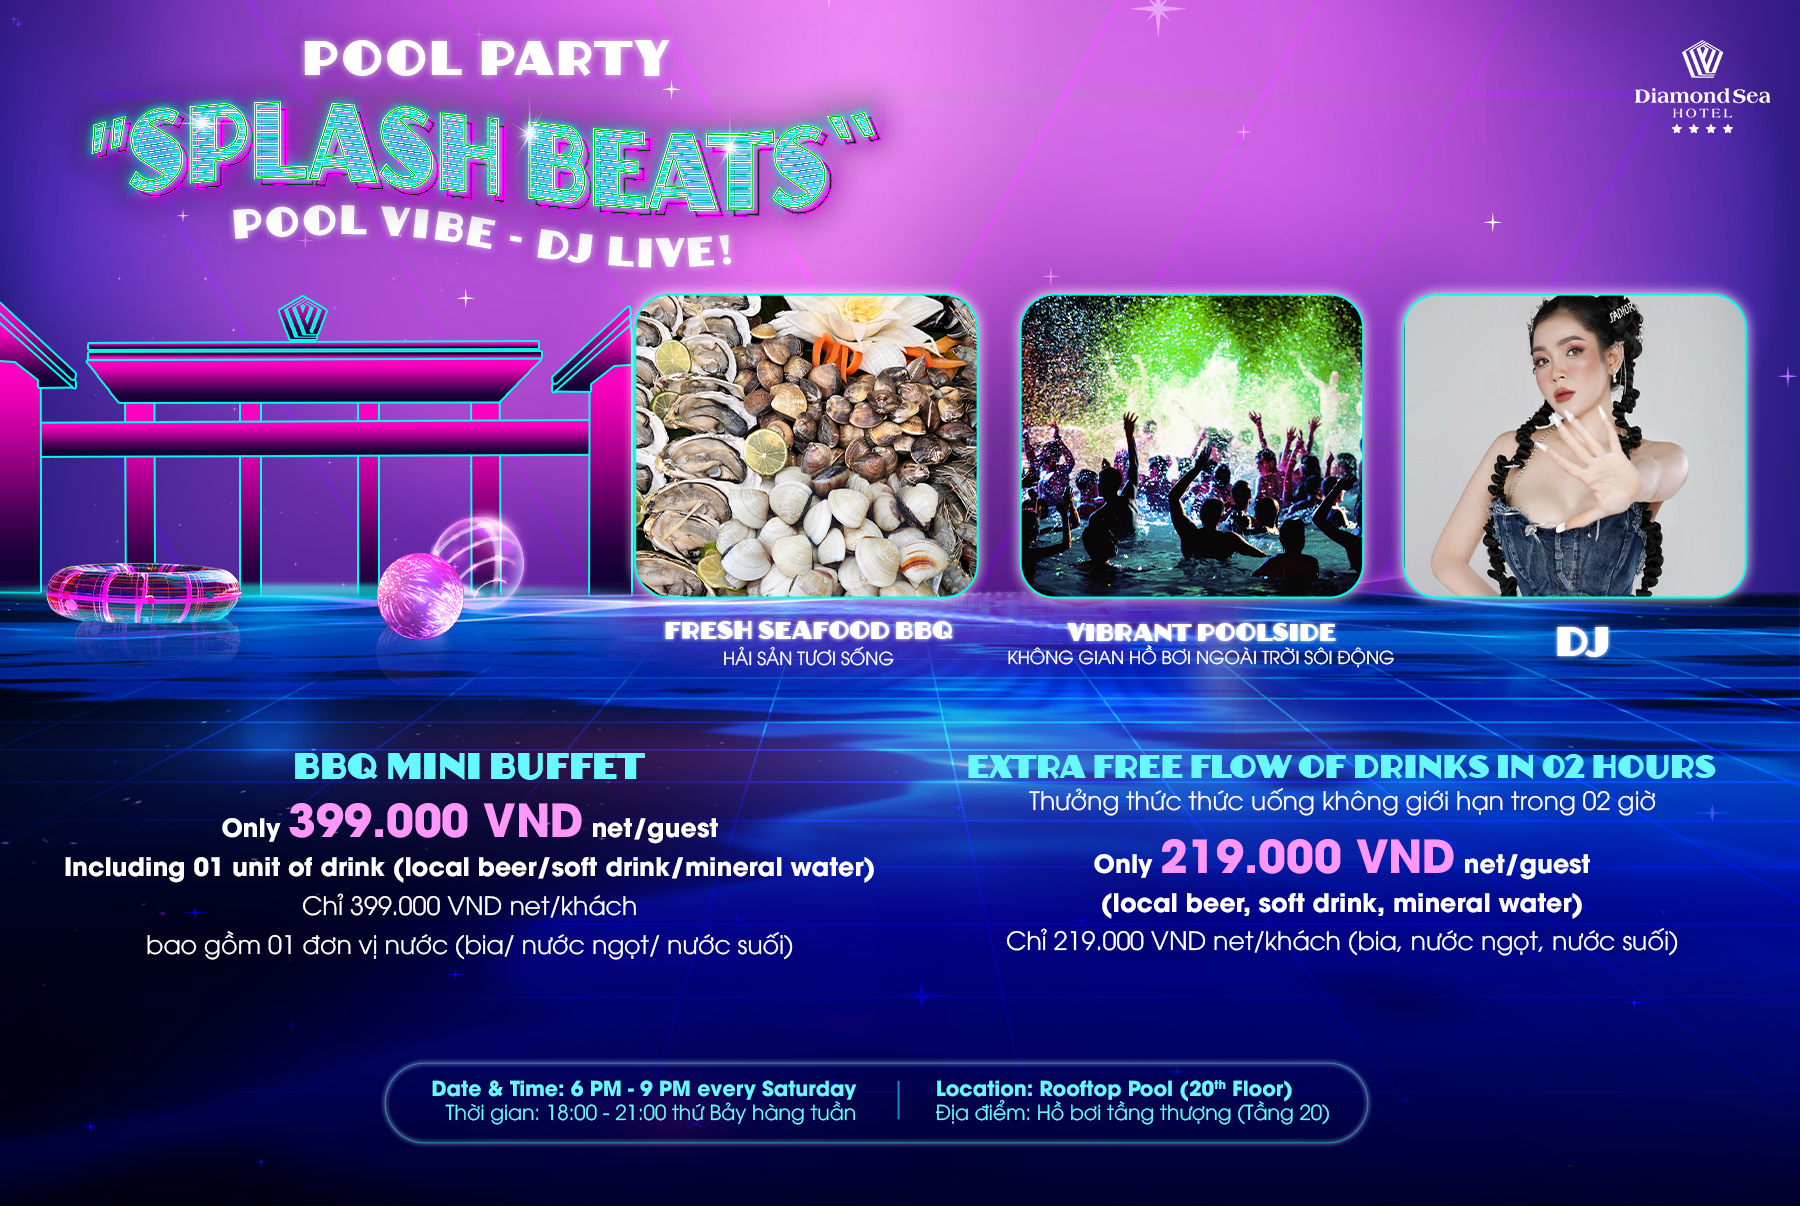 Tiệc DJ - Hồ Bơi Mini Buffet “Splash Beats!”